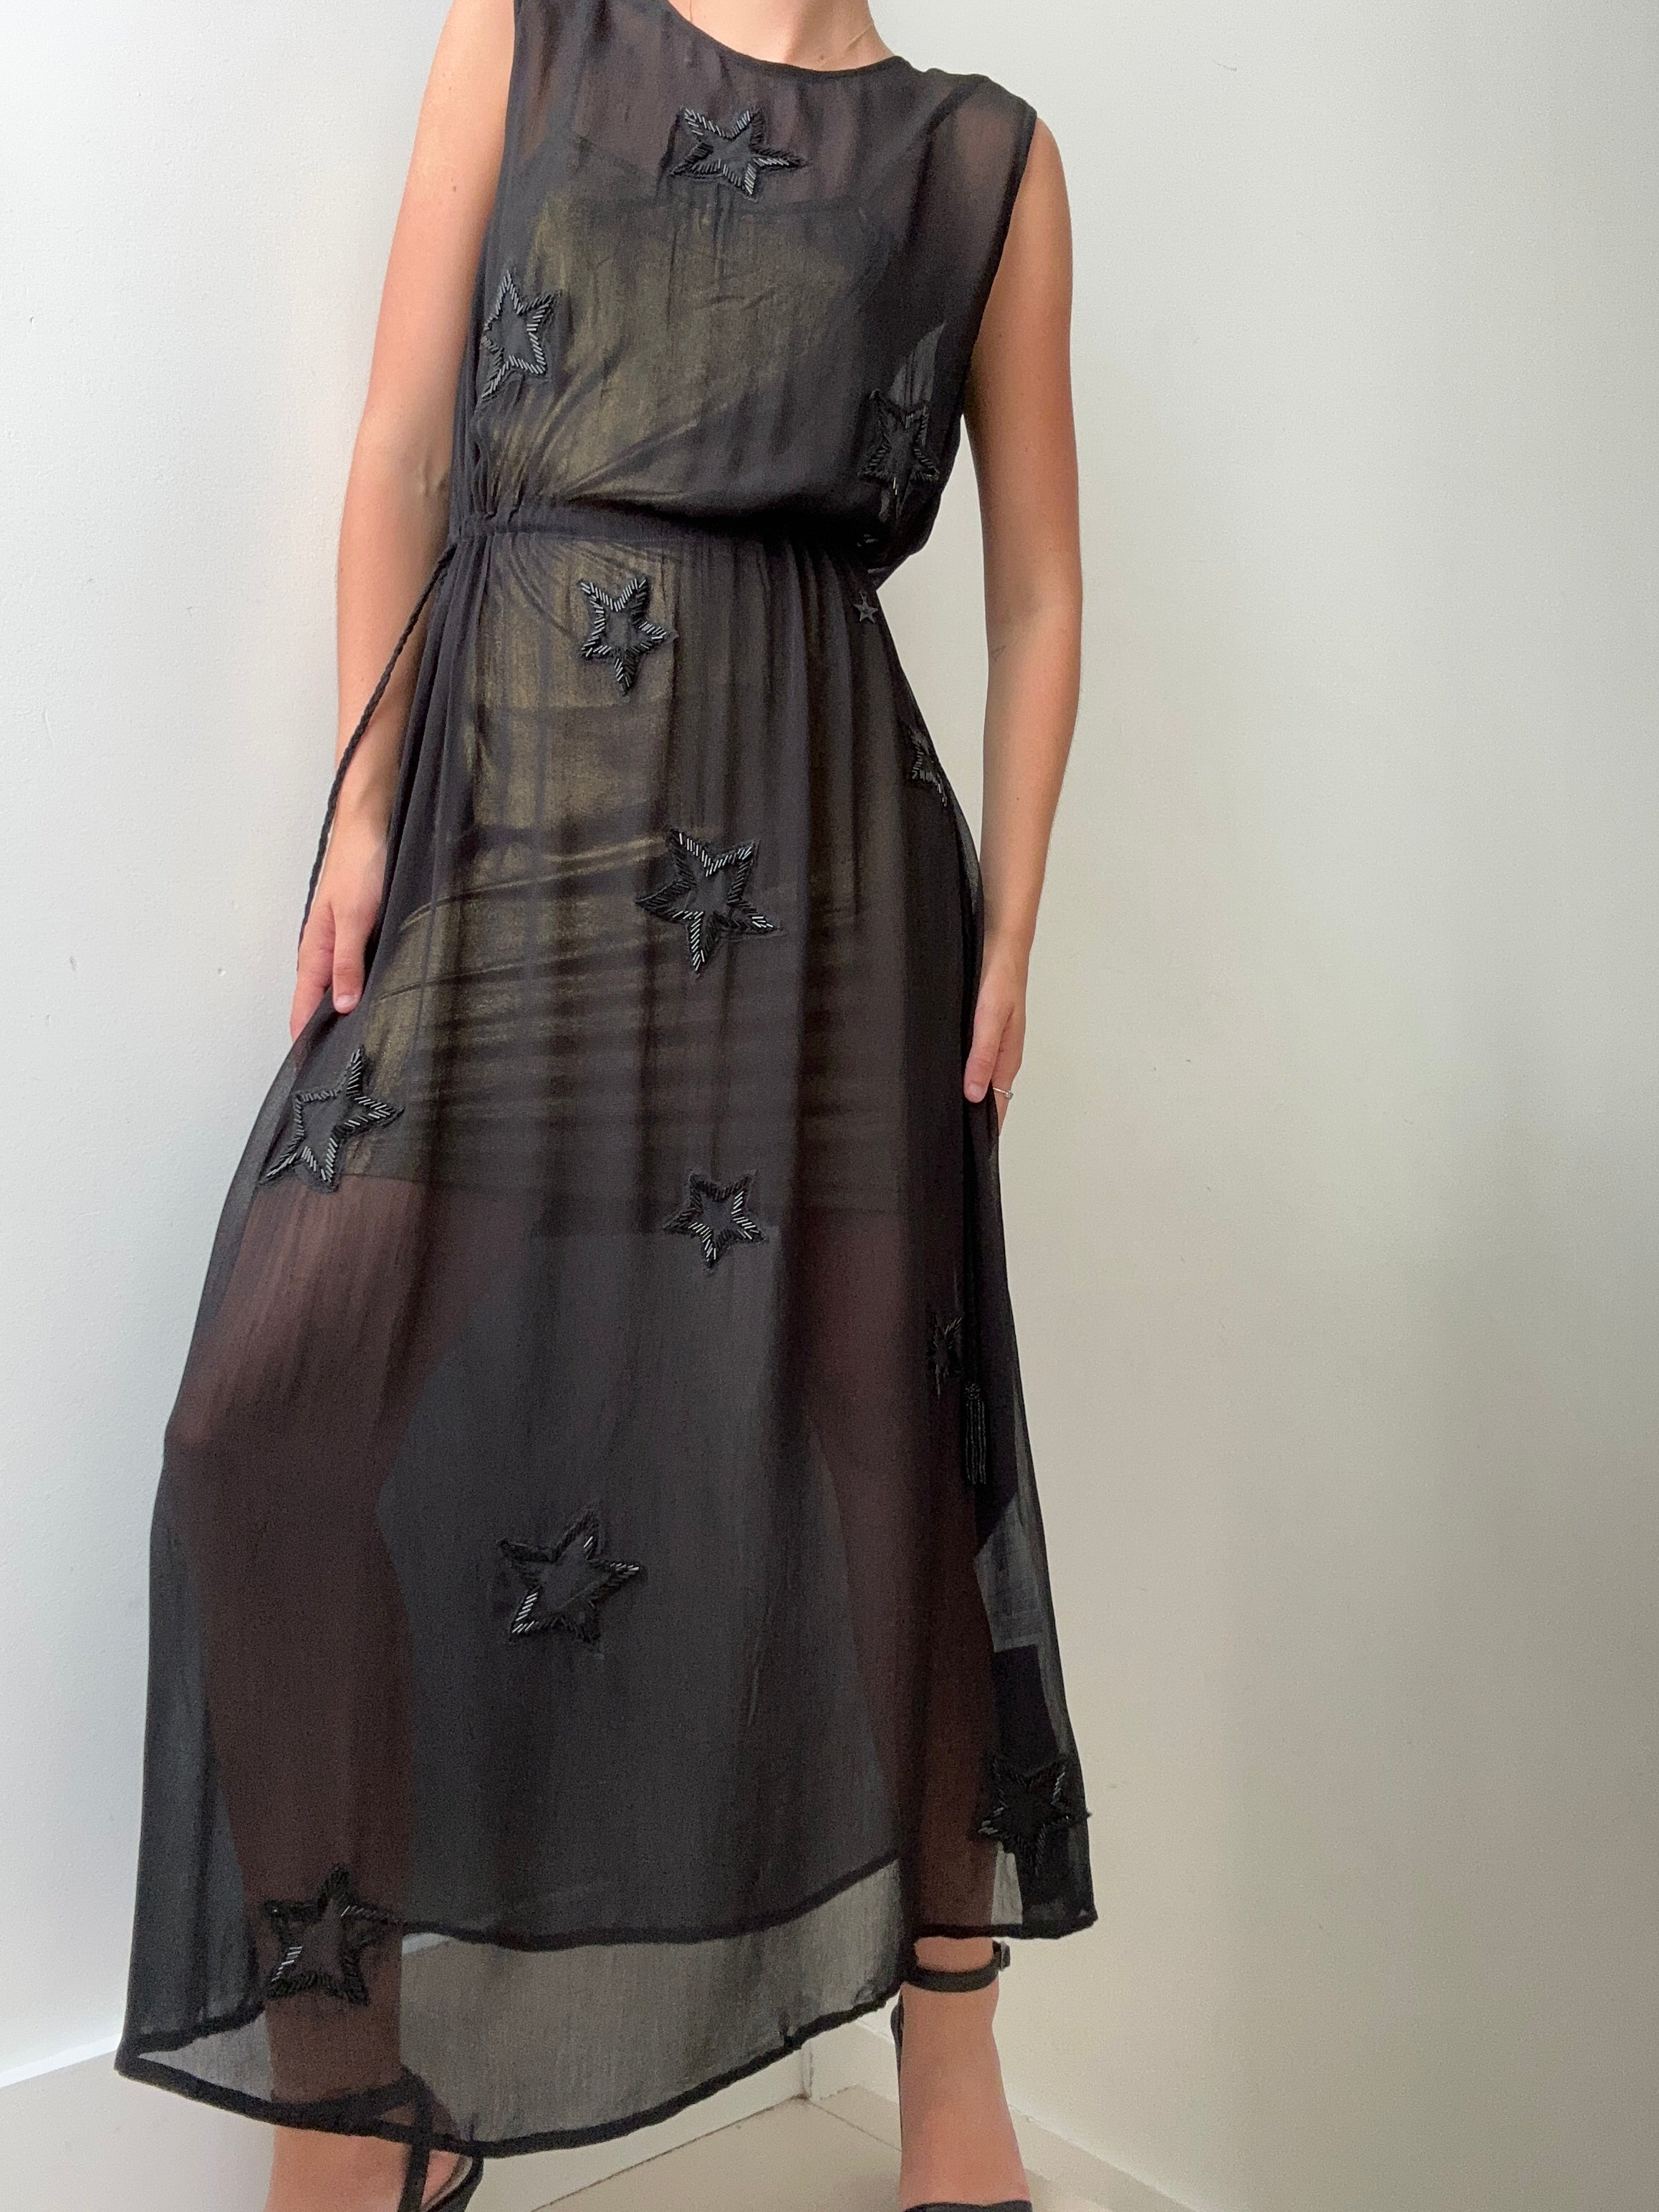 ByBlos Dresses ByBlos Star Sequin Dress